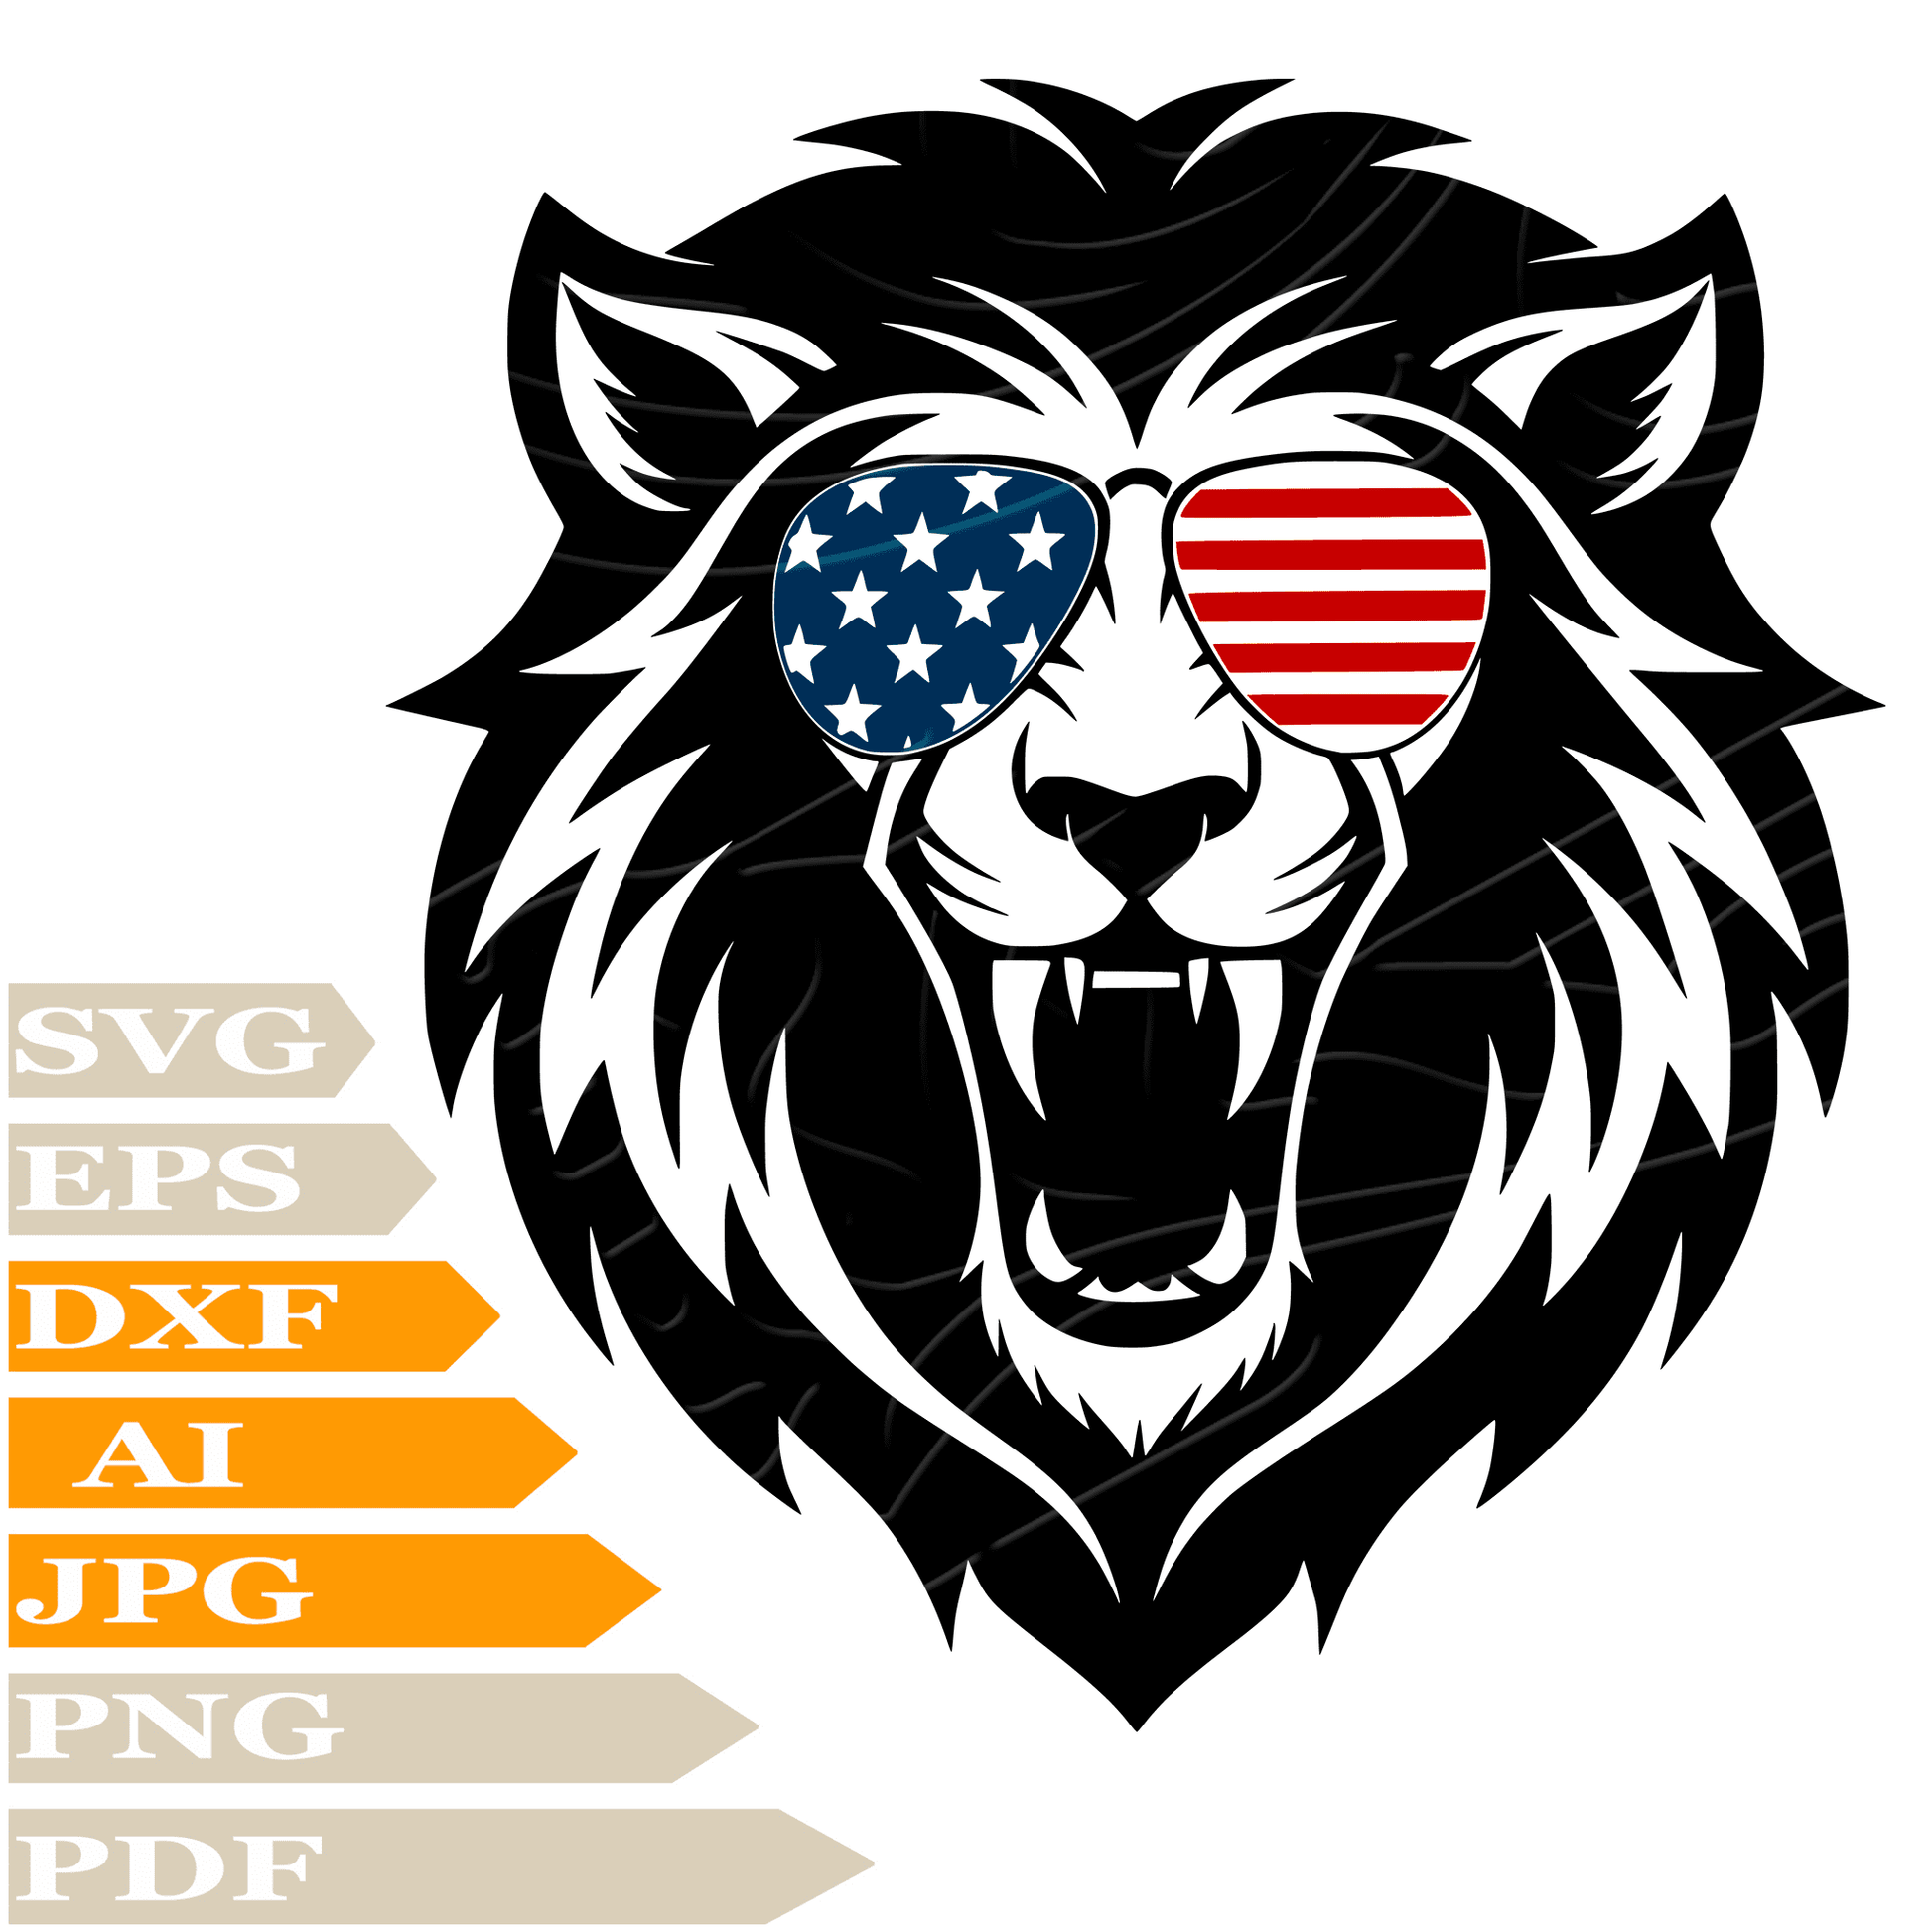 Lion SVG File, Lion With Sunglasses SVG Design, Lion Face SVG, Lion Head Vector Digital, Lion Face PNG, For Cricut, Clipart, Cut File, Print, Instant Download, T-Shirt, Silhouette